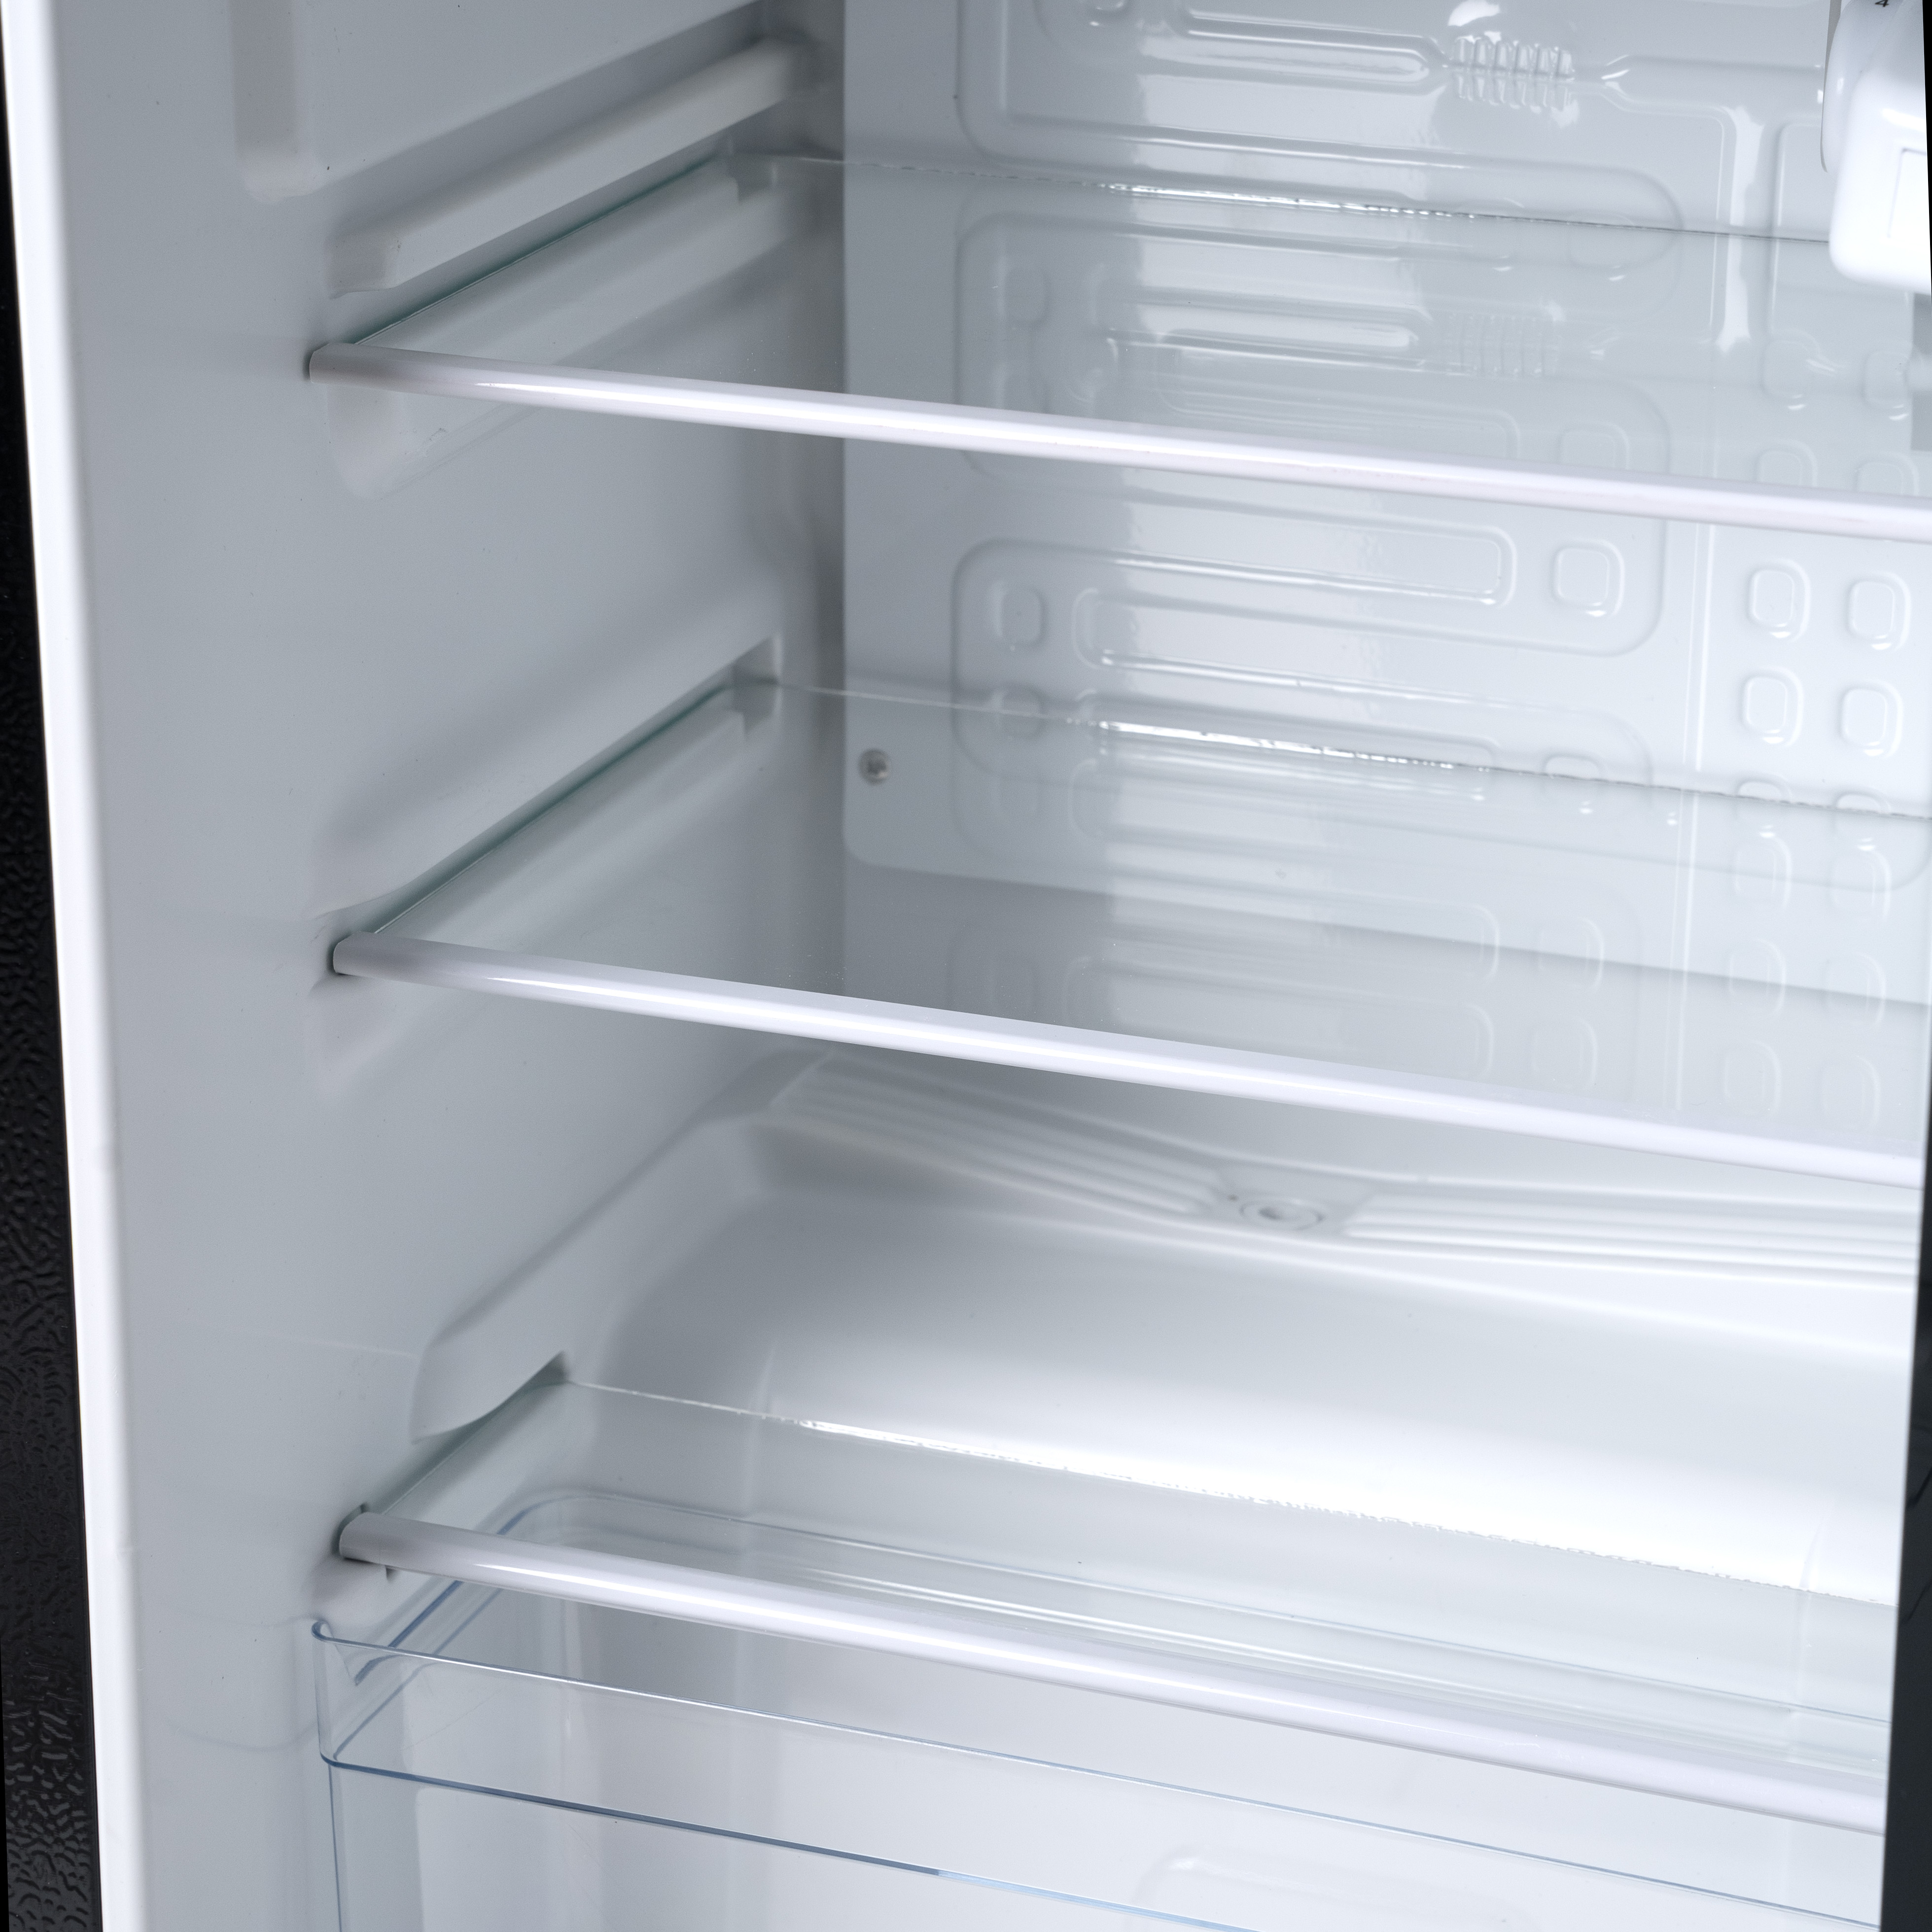 Витринный холодильник серия Standard - MUXXED BC-80J